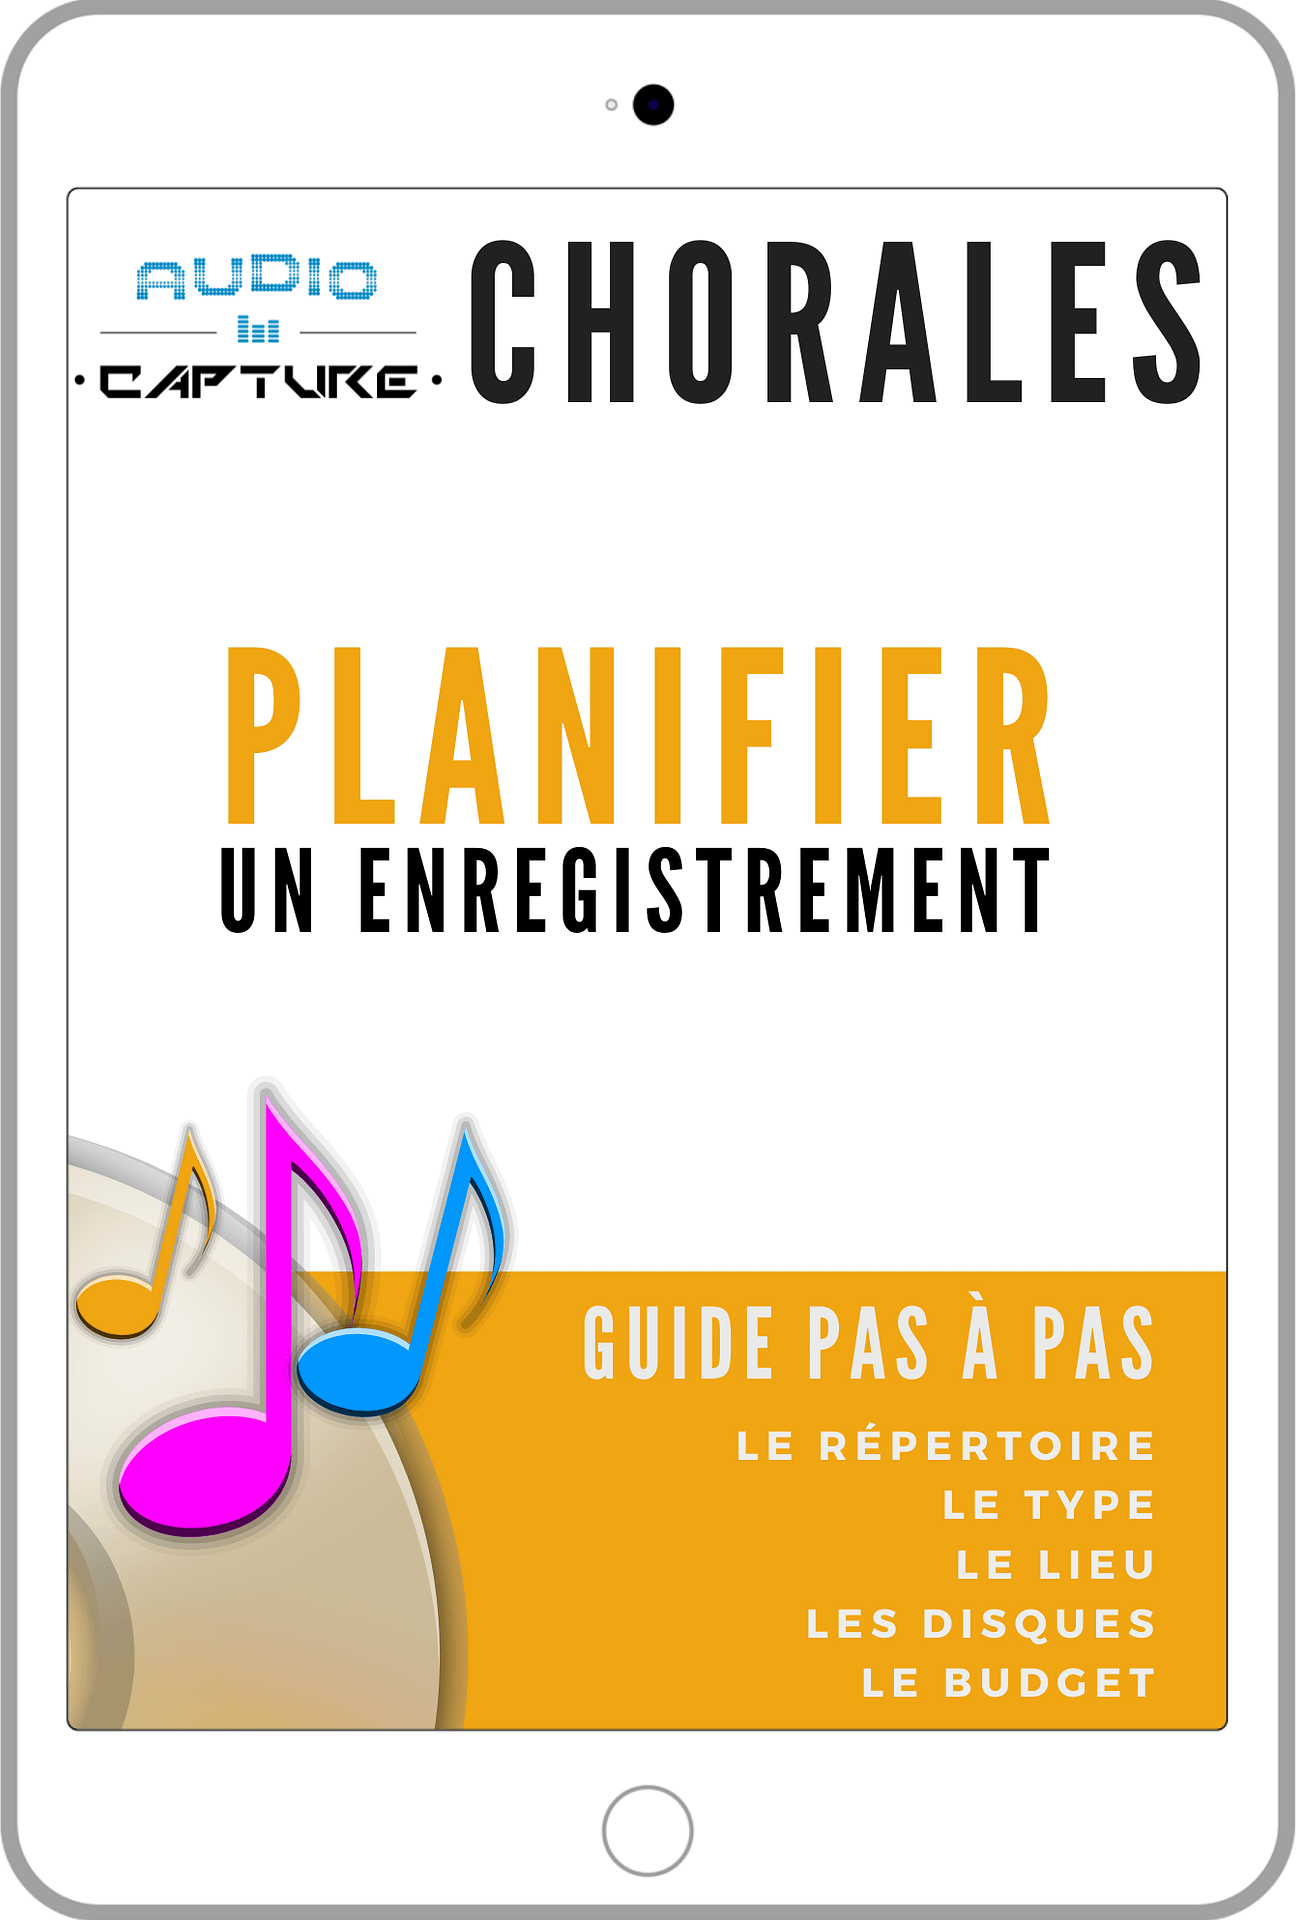 Planifier un enregistrement de chorale - Choeursenchanteurs